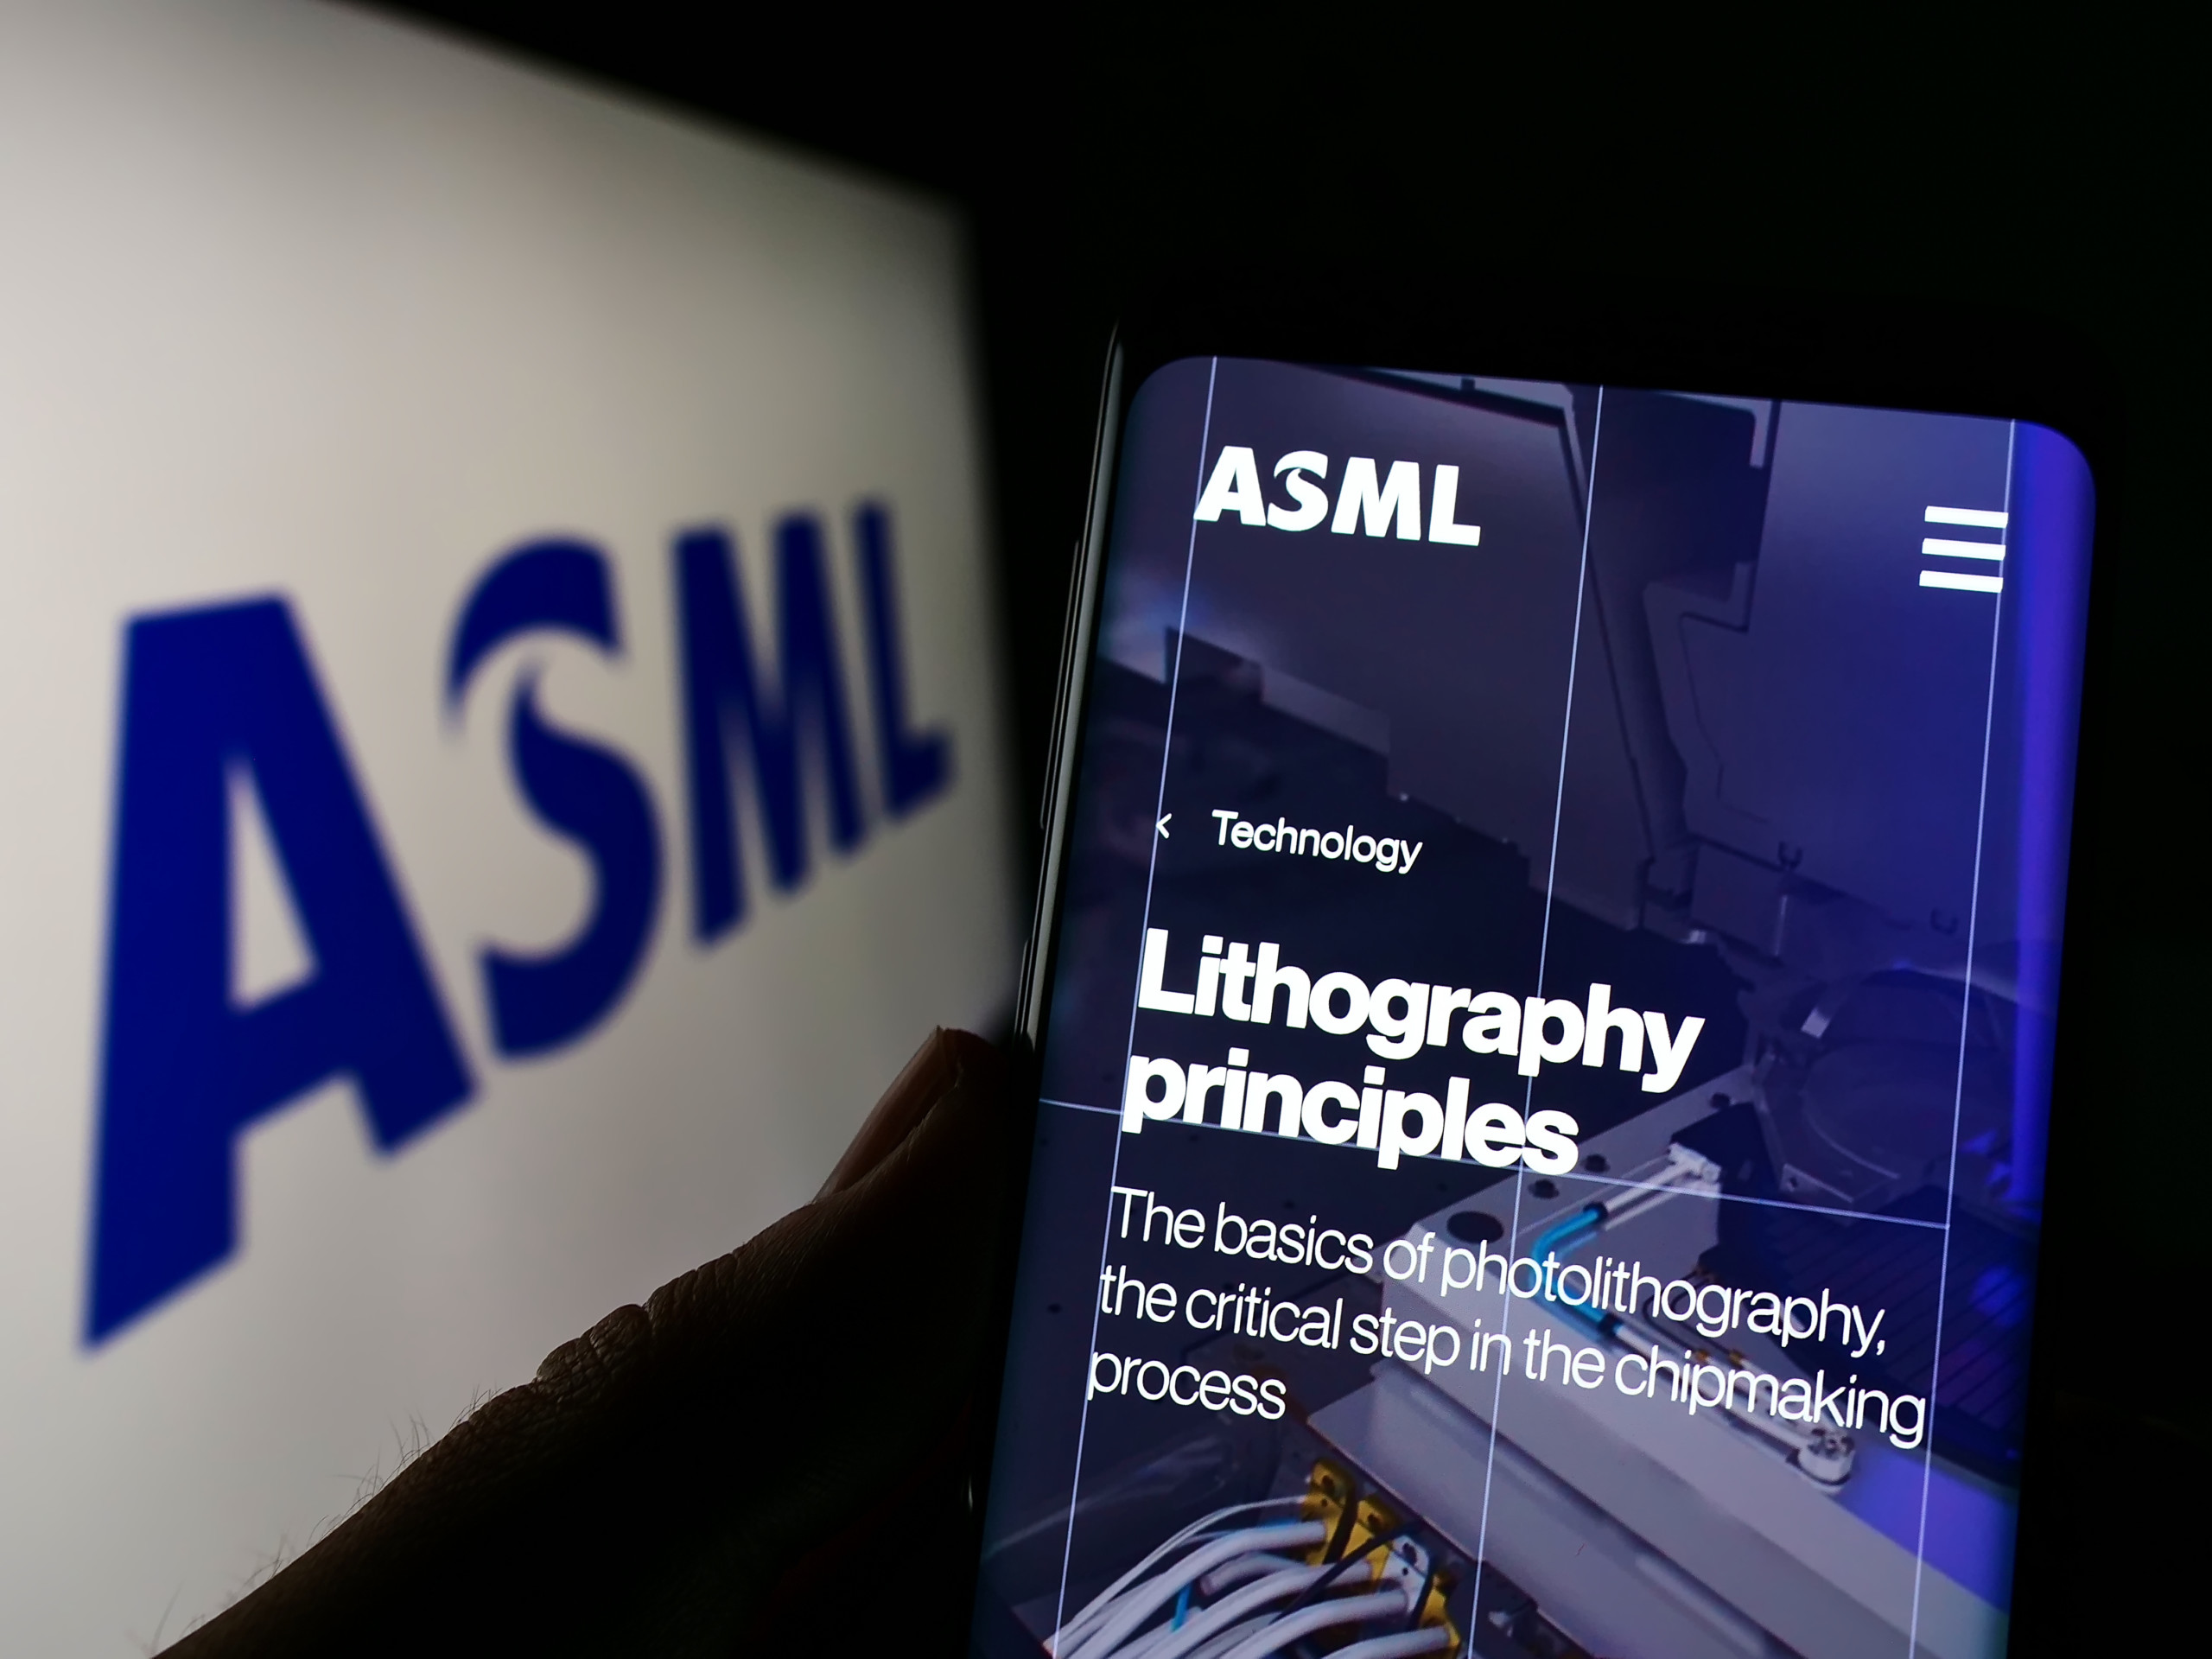 Chiphersteller ASML ist auf Wachstumskurs – Umsatz und Marge dürften sich weiter verbessern